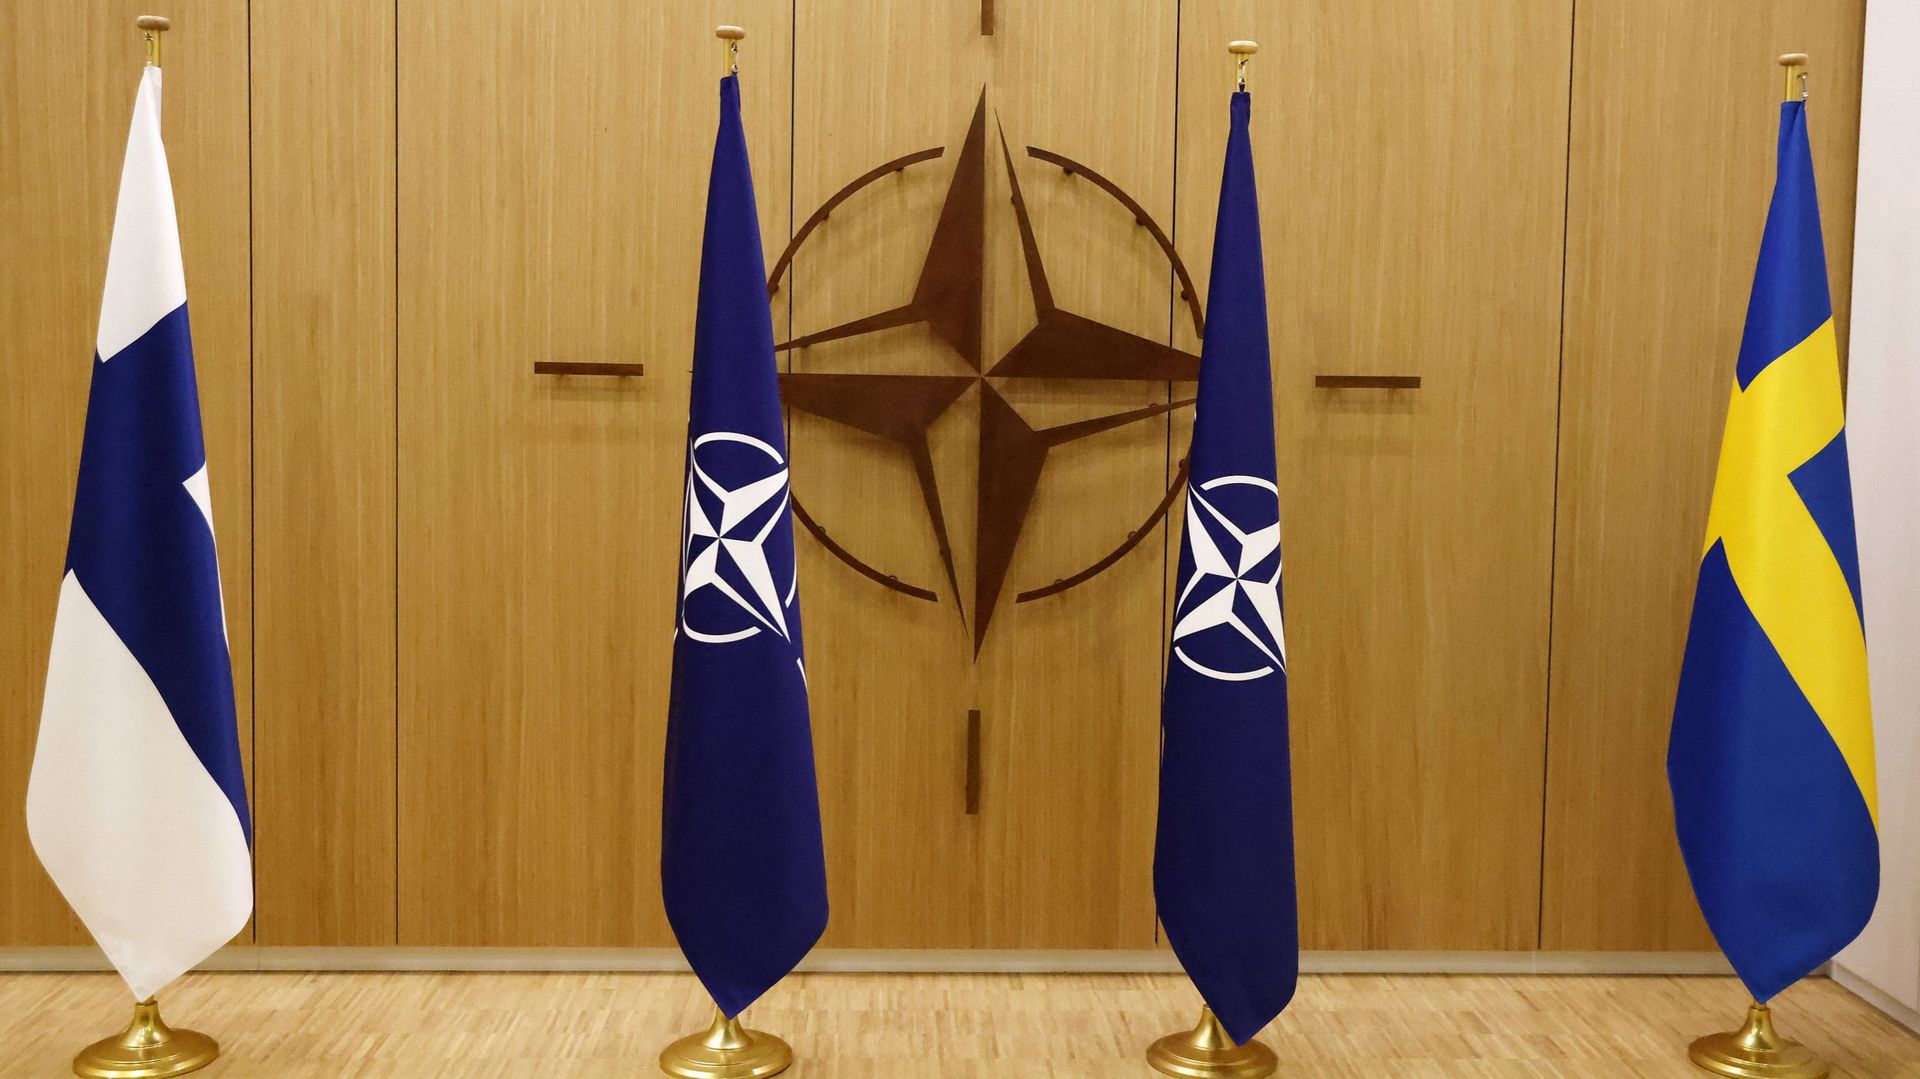 La Finlande et la Suède ont déposé leur demande d’adhésion à l’OTAN le 18 mai 2022 et des consultations sont en cours entre les Alliés pour lever l’opposition de la Turquie à l’intégration des deux pays nordiques dans l’Alliance.
